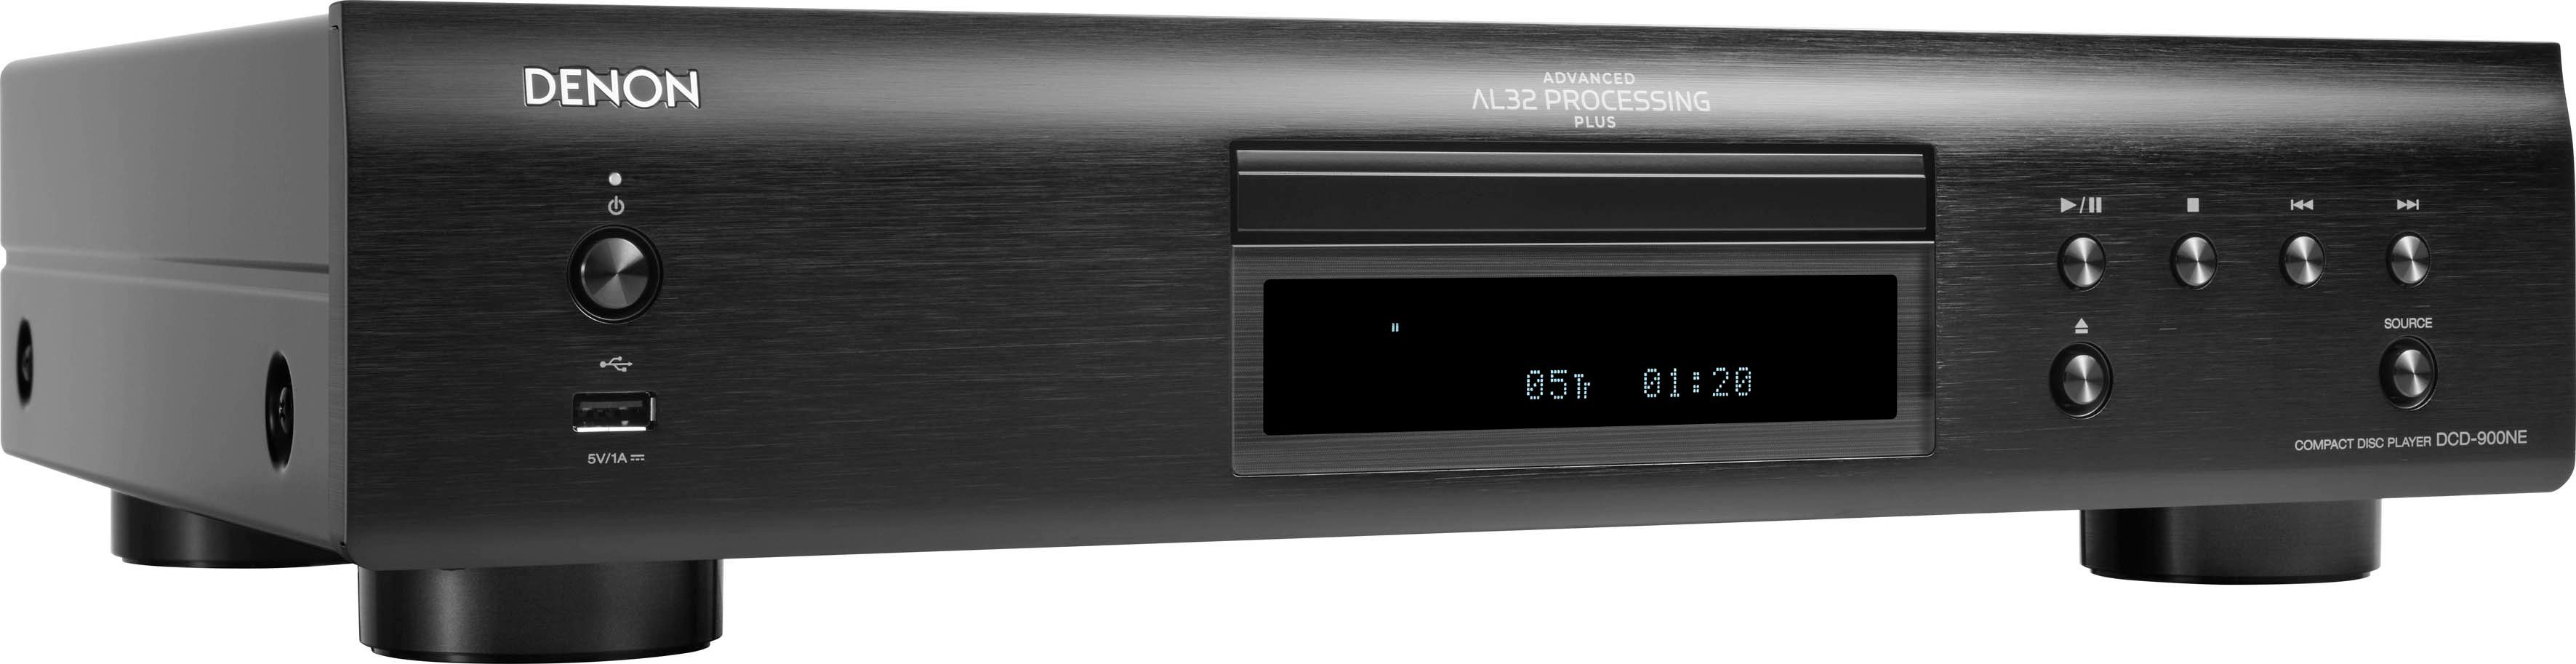 Denon DCD-900NE CD-Player (USB-Audiowiedergabe) schwarz